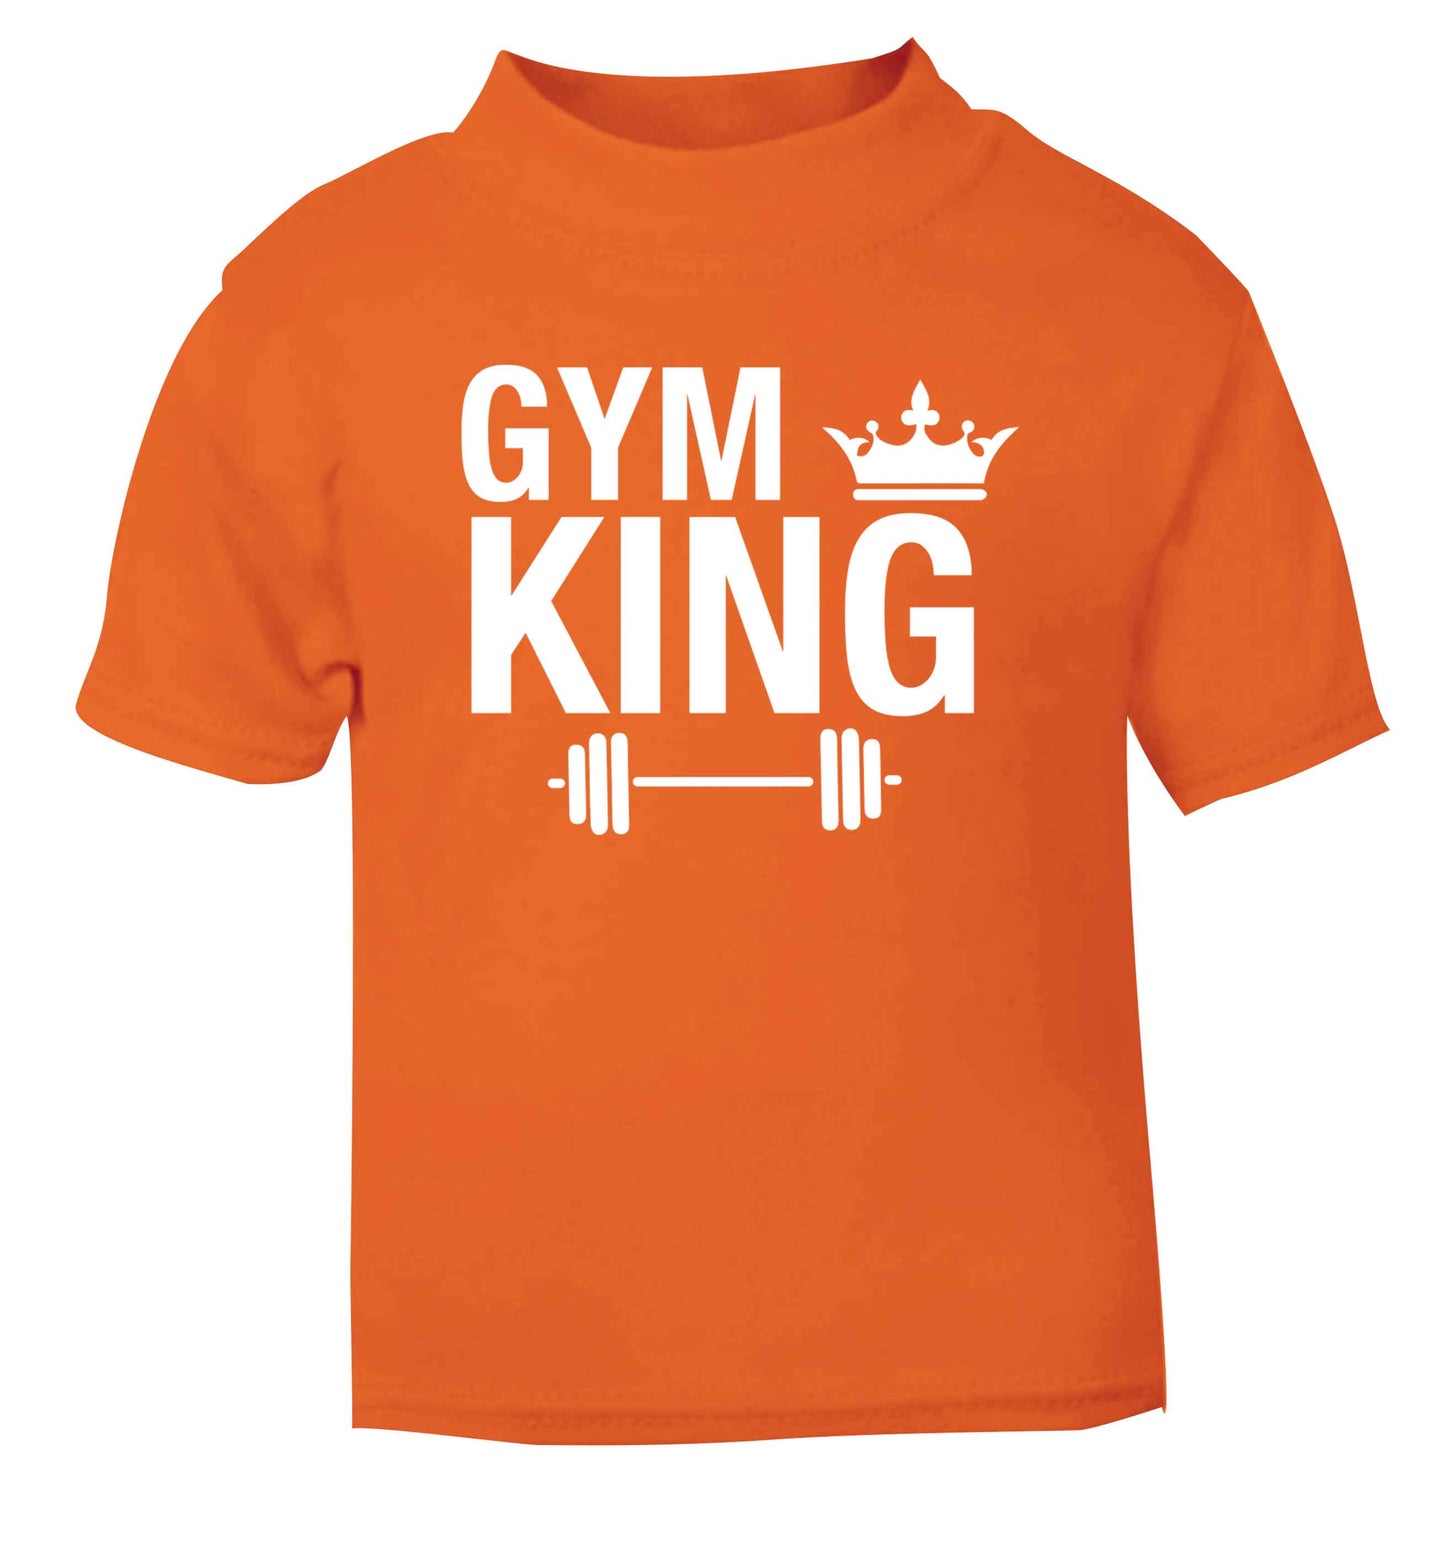 Gym king orange Baby Toddler Tshirt 2 Years